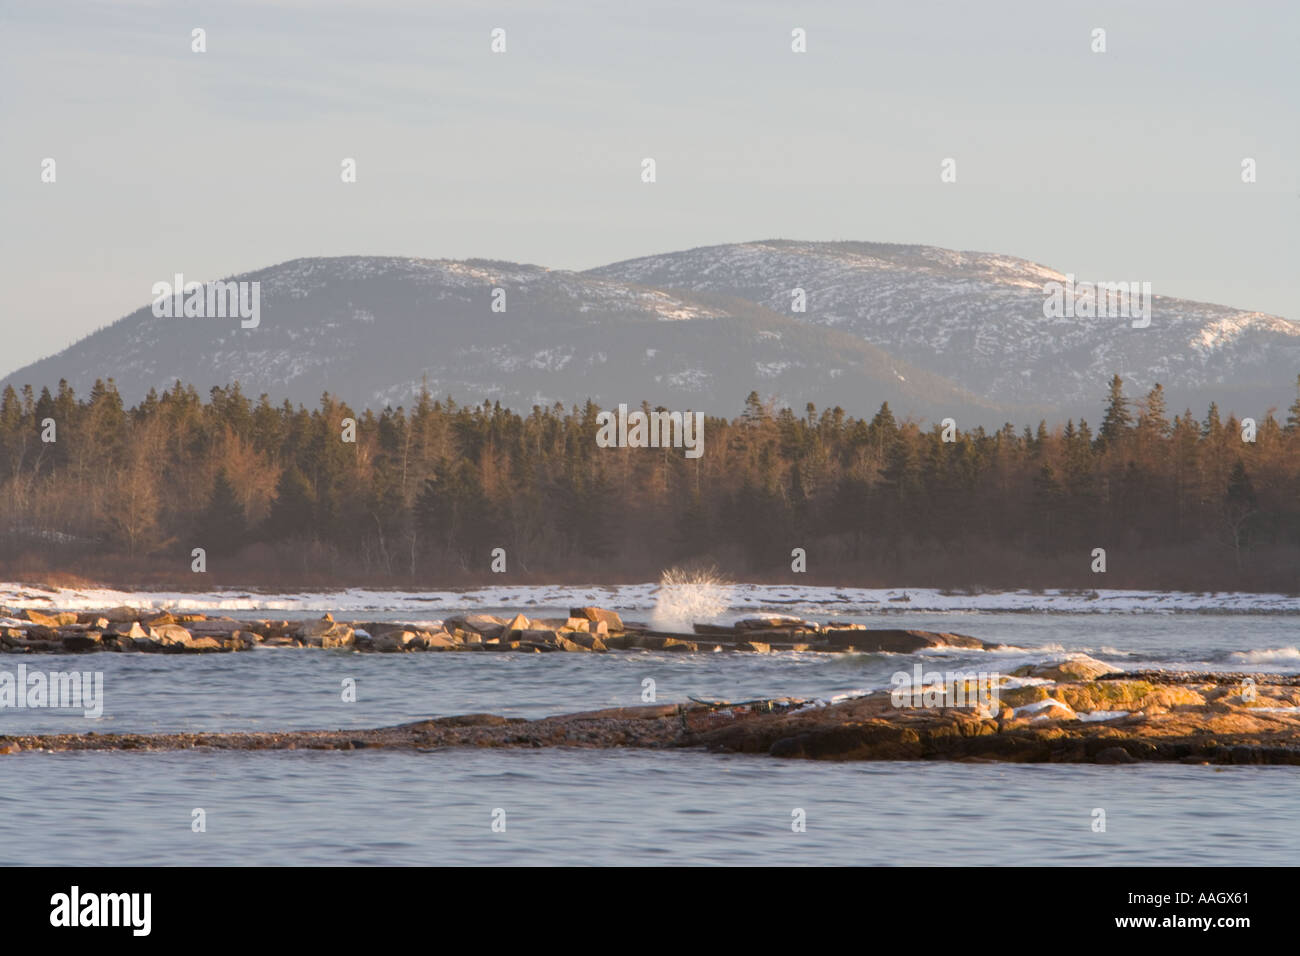 Cadillac Mountain von Wunderland in Maine s Acadia National Park gesehen Stockfoto